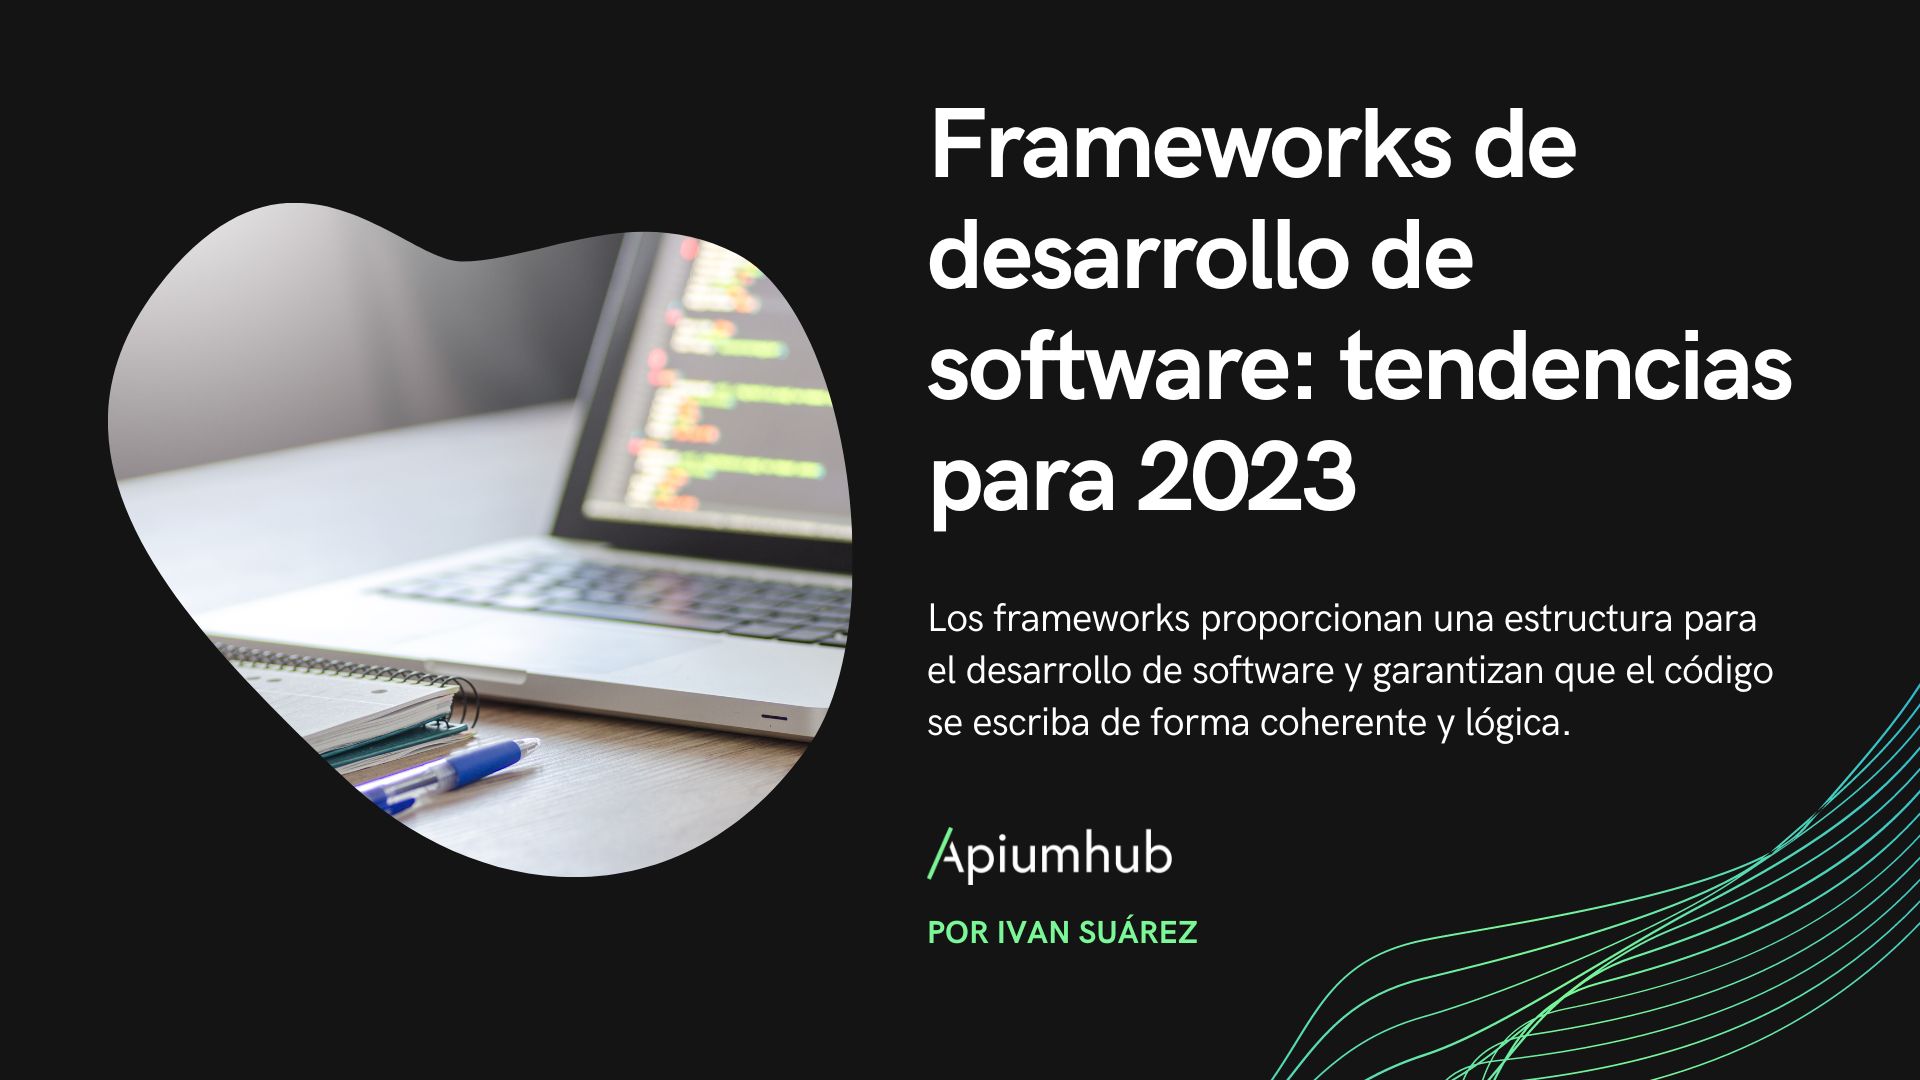 Frameworks de desarrollo de software: tendencias para 2023